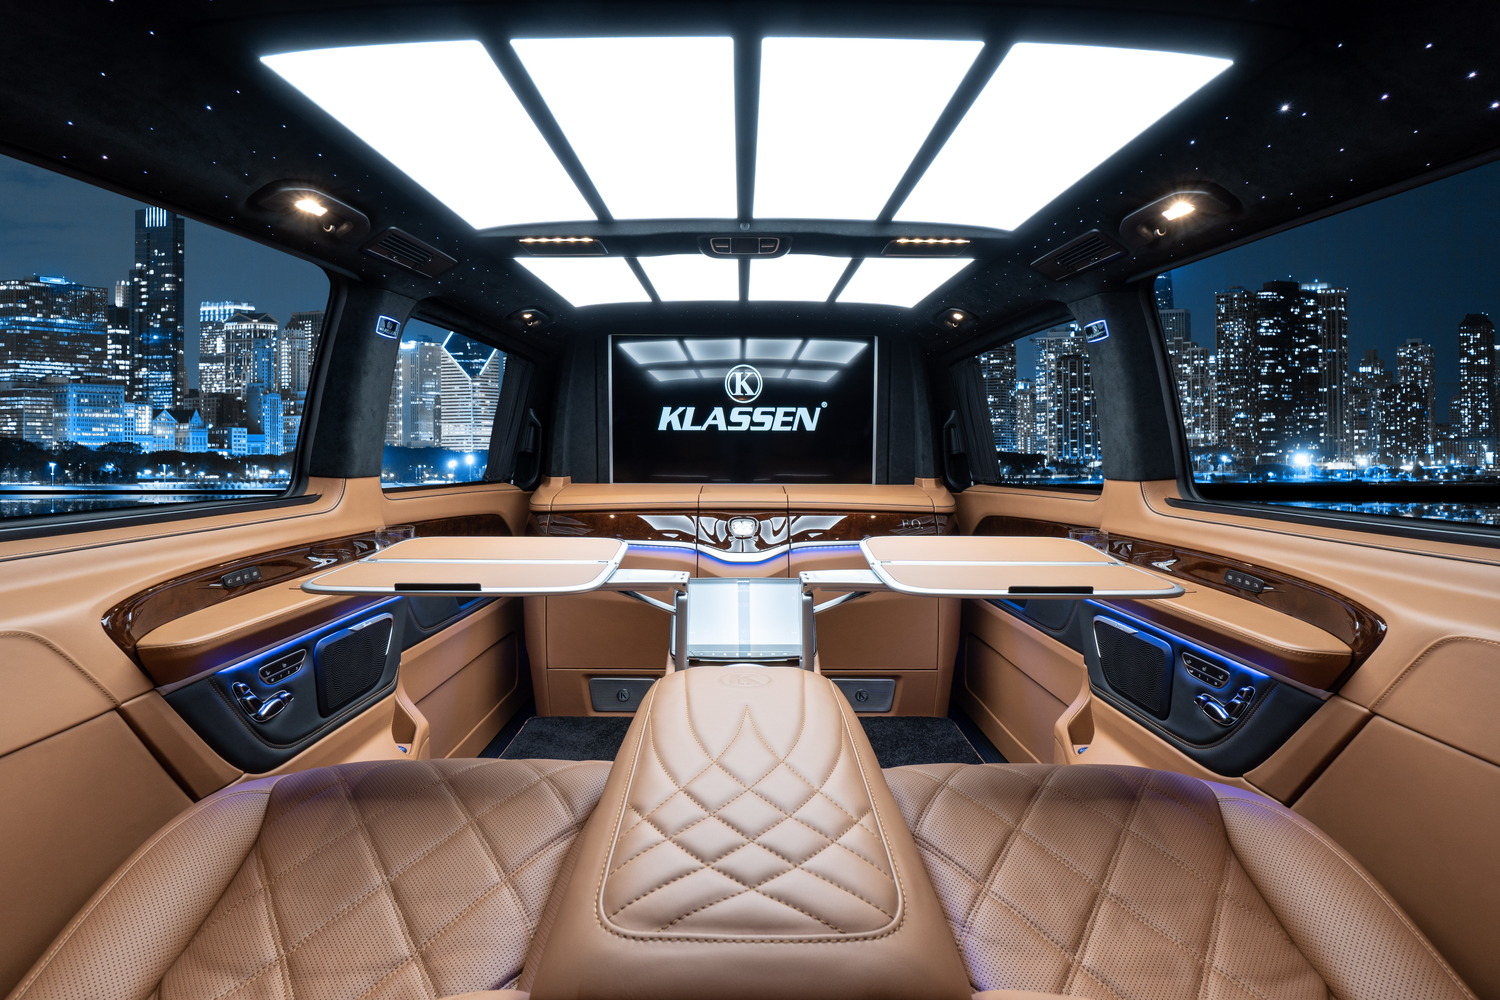 V-Klasse Mercedes: Luxus, Größe und einmaliges Design